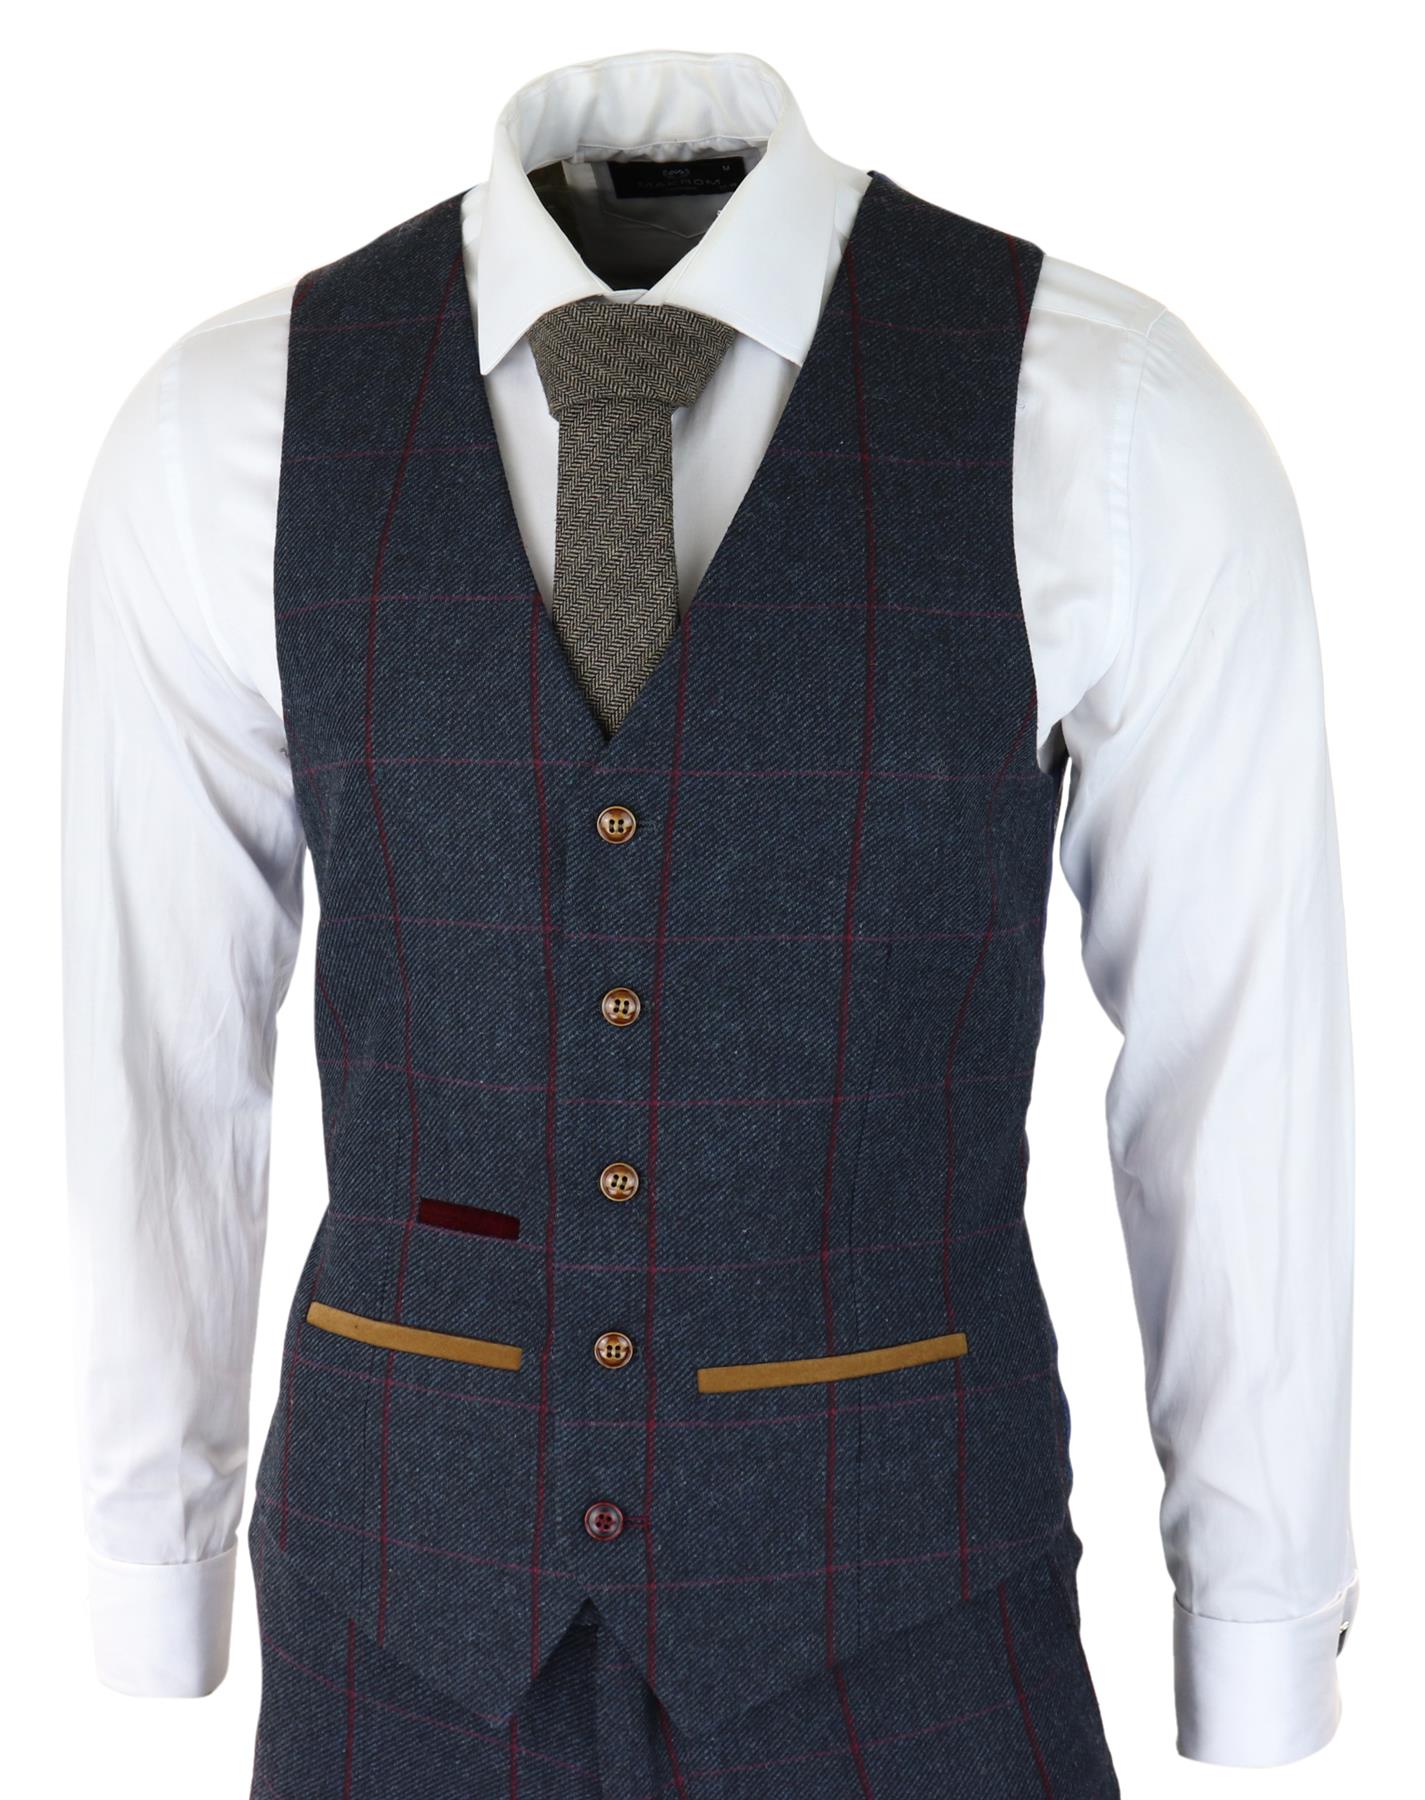 Mens Herringbone Tweed Suit 3 Piece Navy Blue Peaky Blinders 1920s Tailored Fit